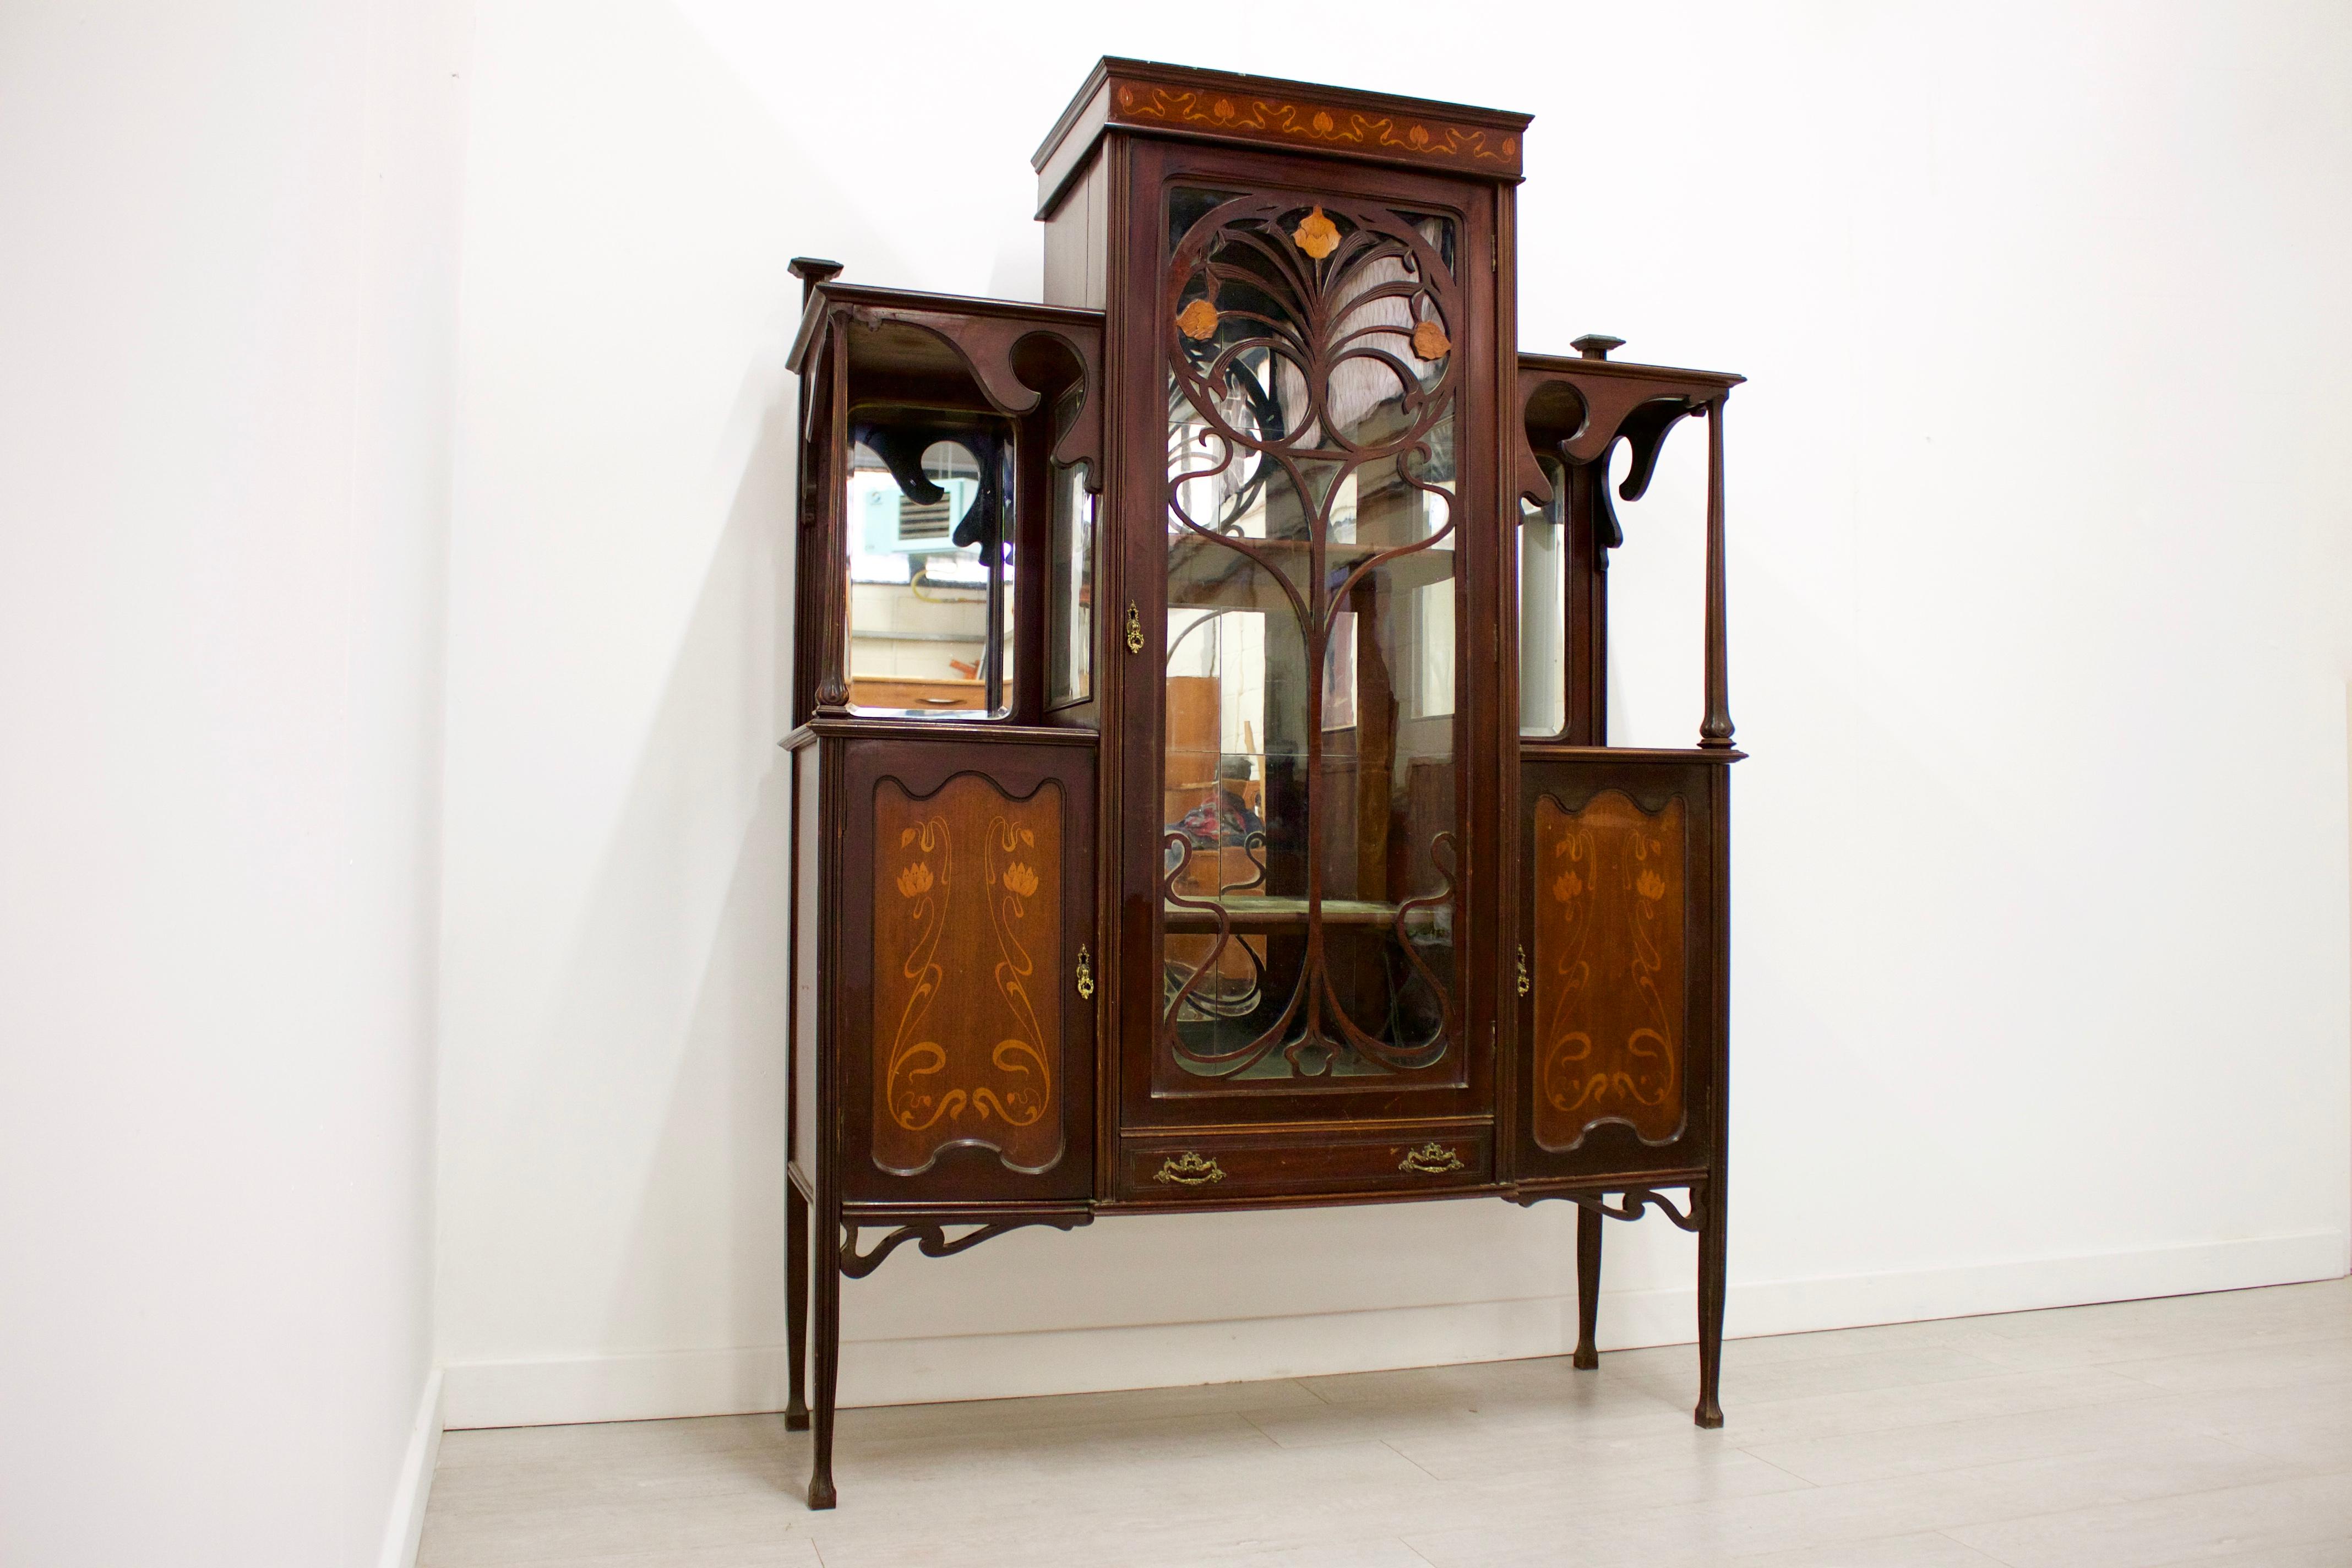 British Antique Large Art Nouveau Display Cabinet, 1900s